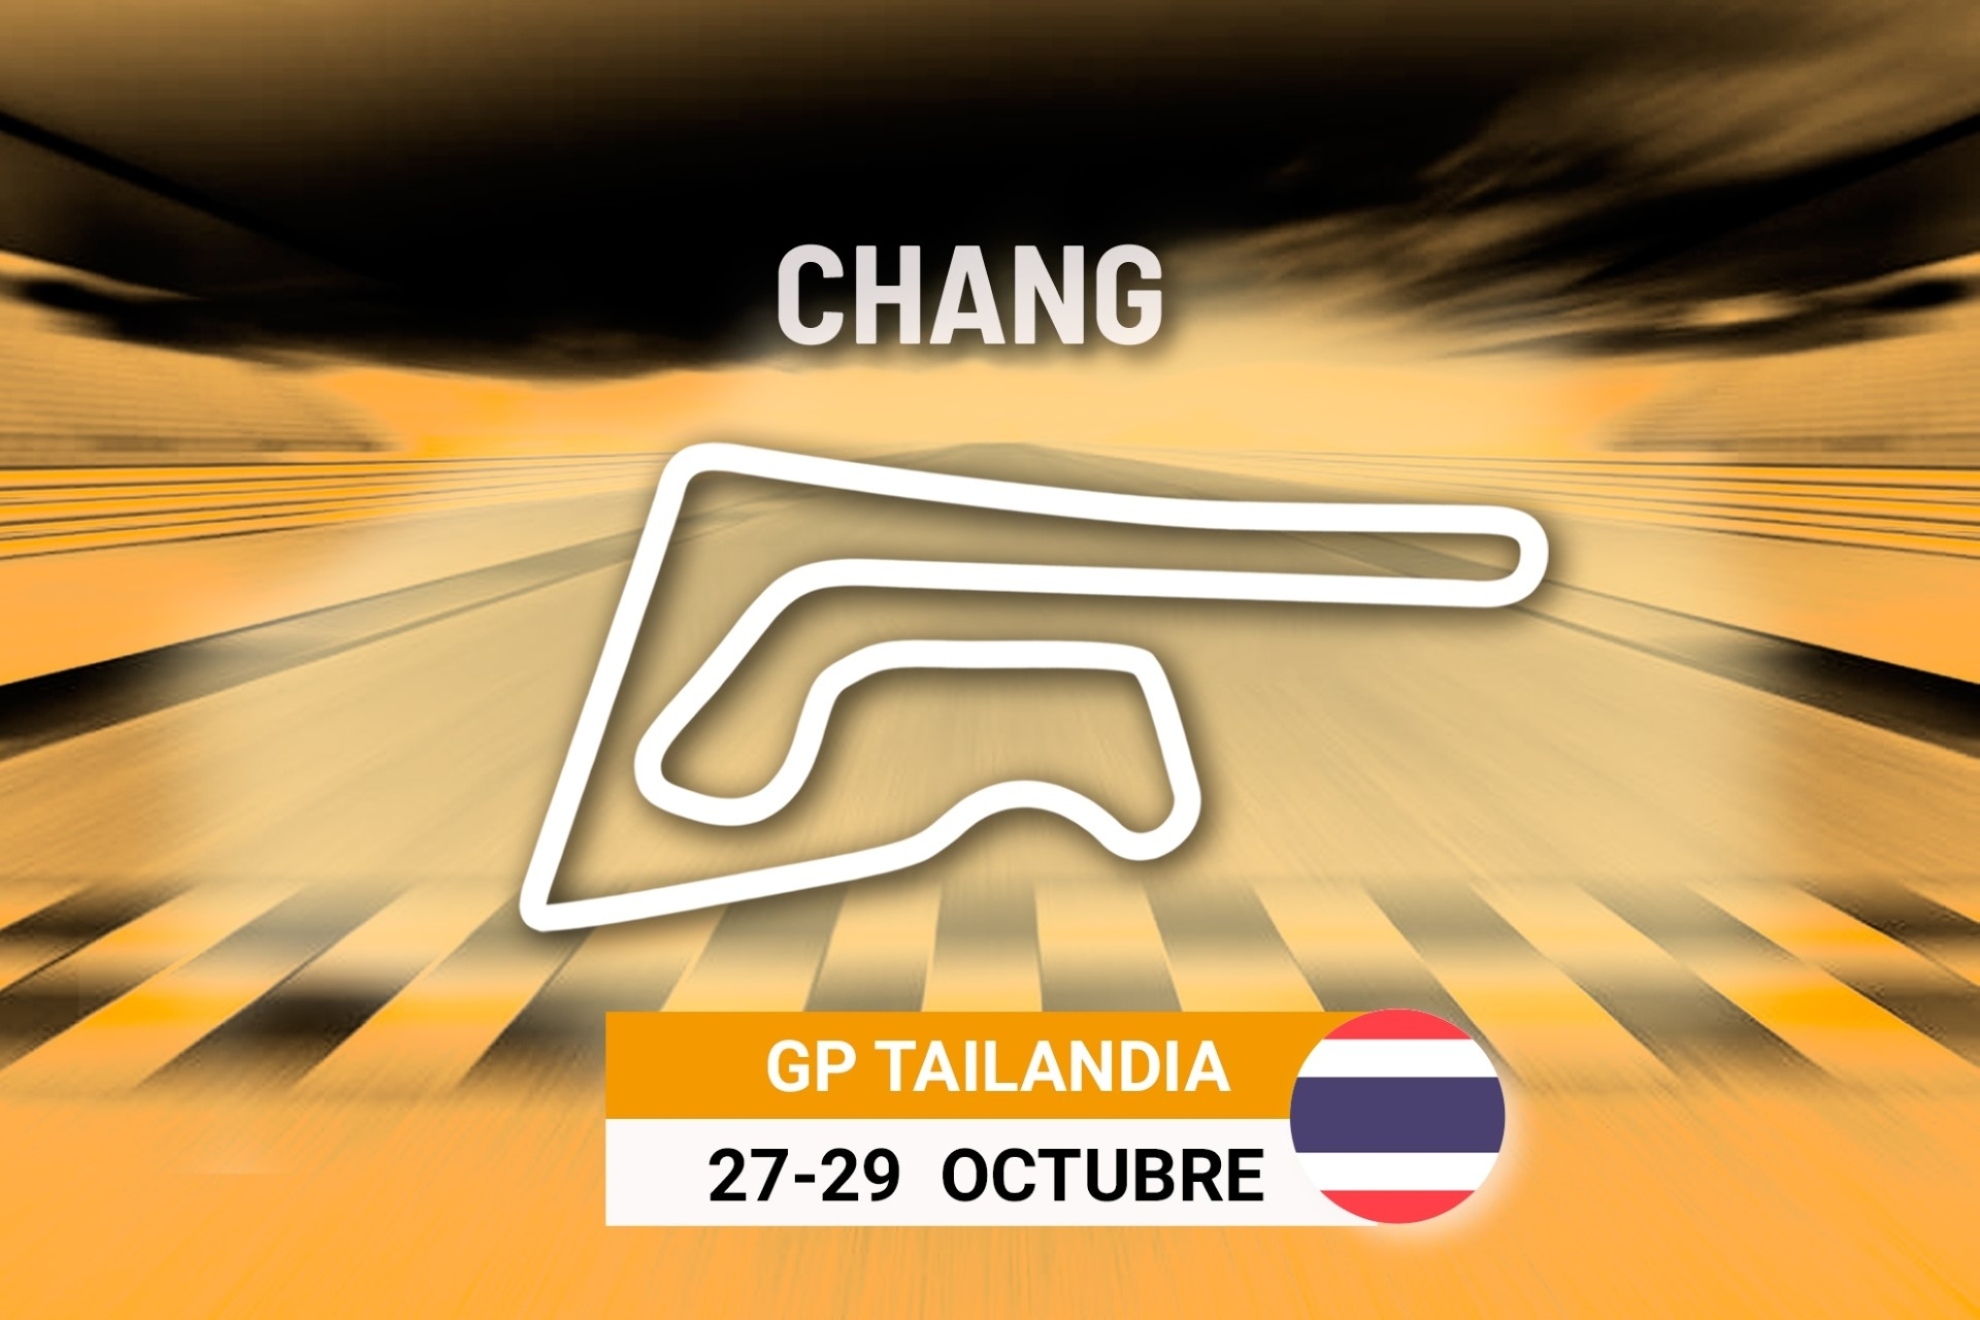 Carrera del GP Tailandia de MotoGP 2023: a qu� hora es y d�nde ver en TV las carreras de Chang